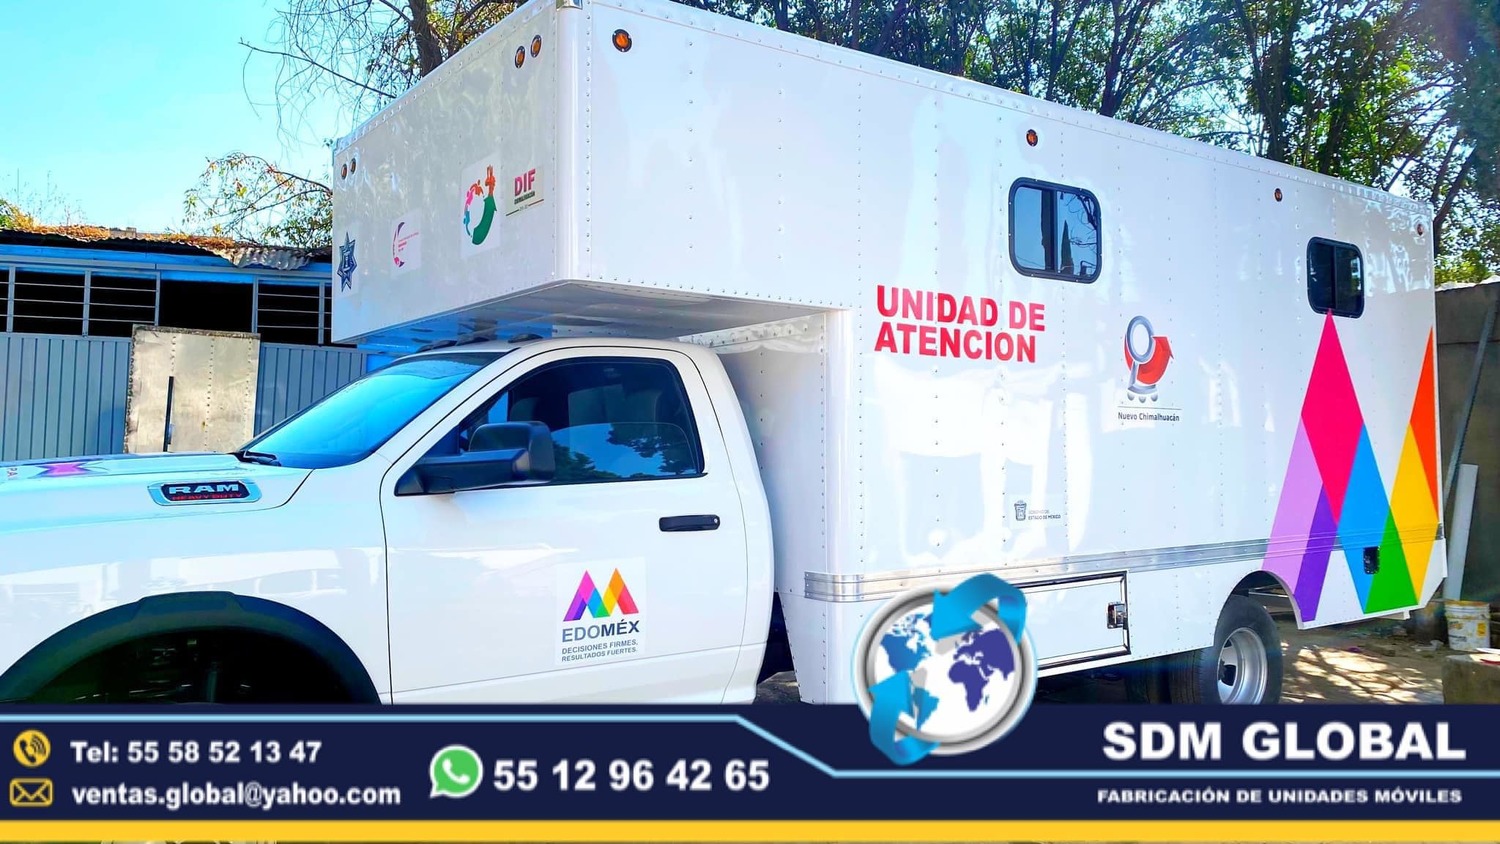 <span style="font-weight: bold;">Fabrica de Unidades Medicas Moviles en Mexico </span>